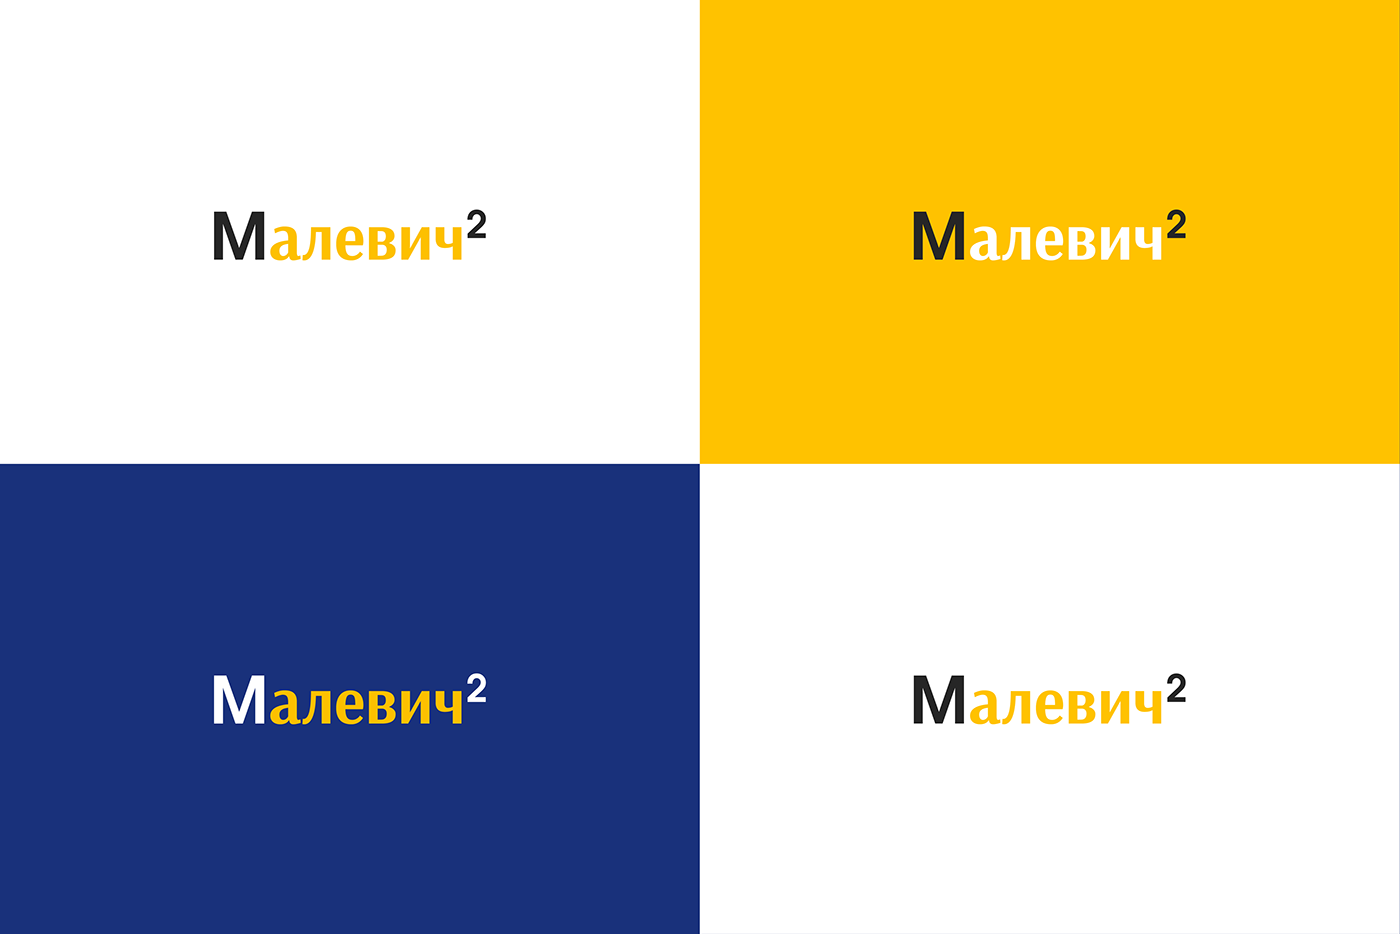 графический дизайн логотип Logo Design Graphic Designer недвижимость real estate design logo дизайн Малевич